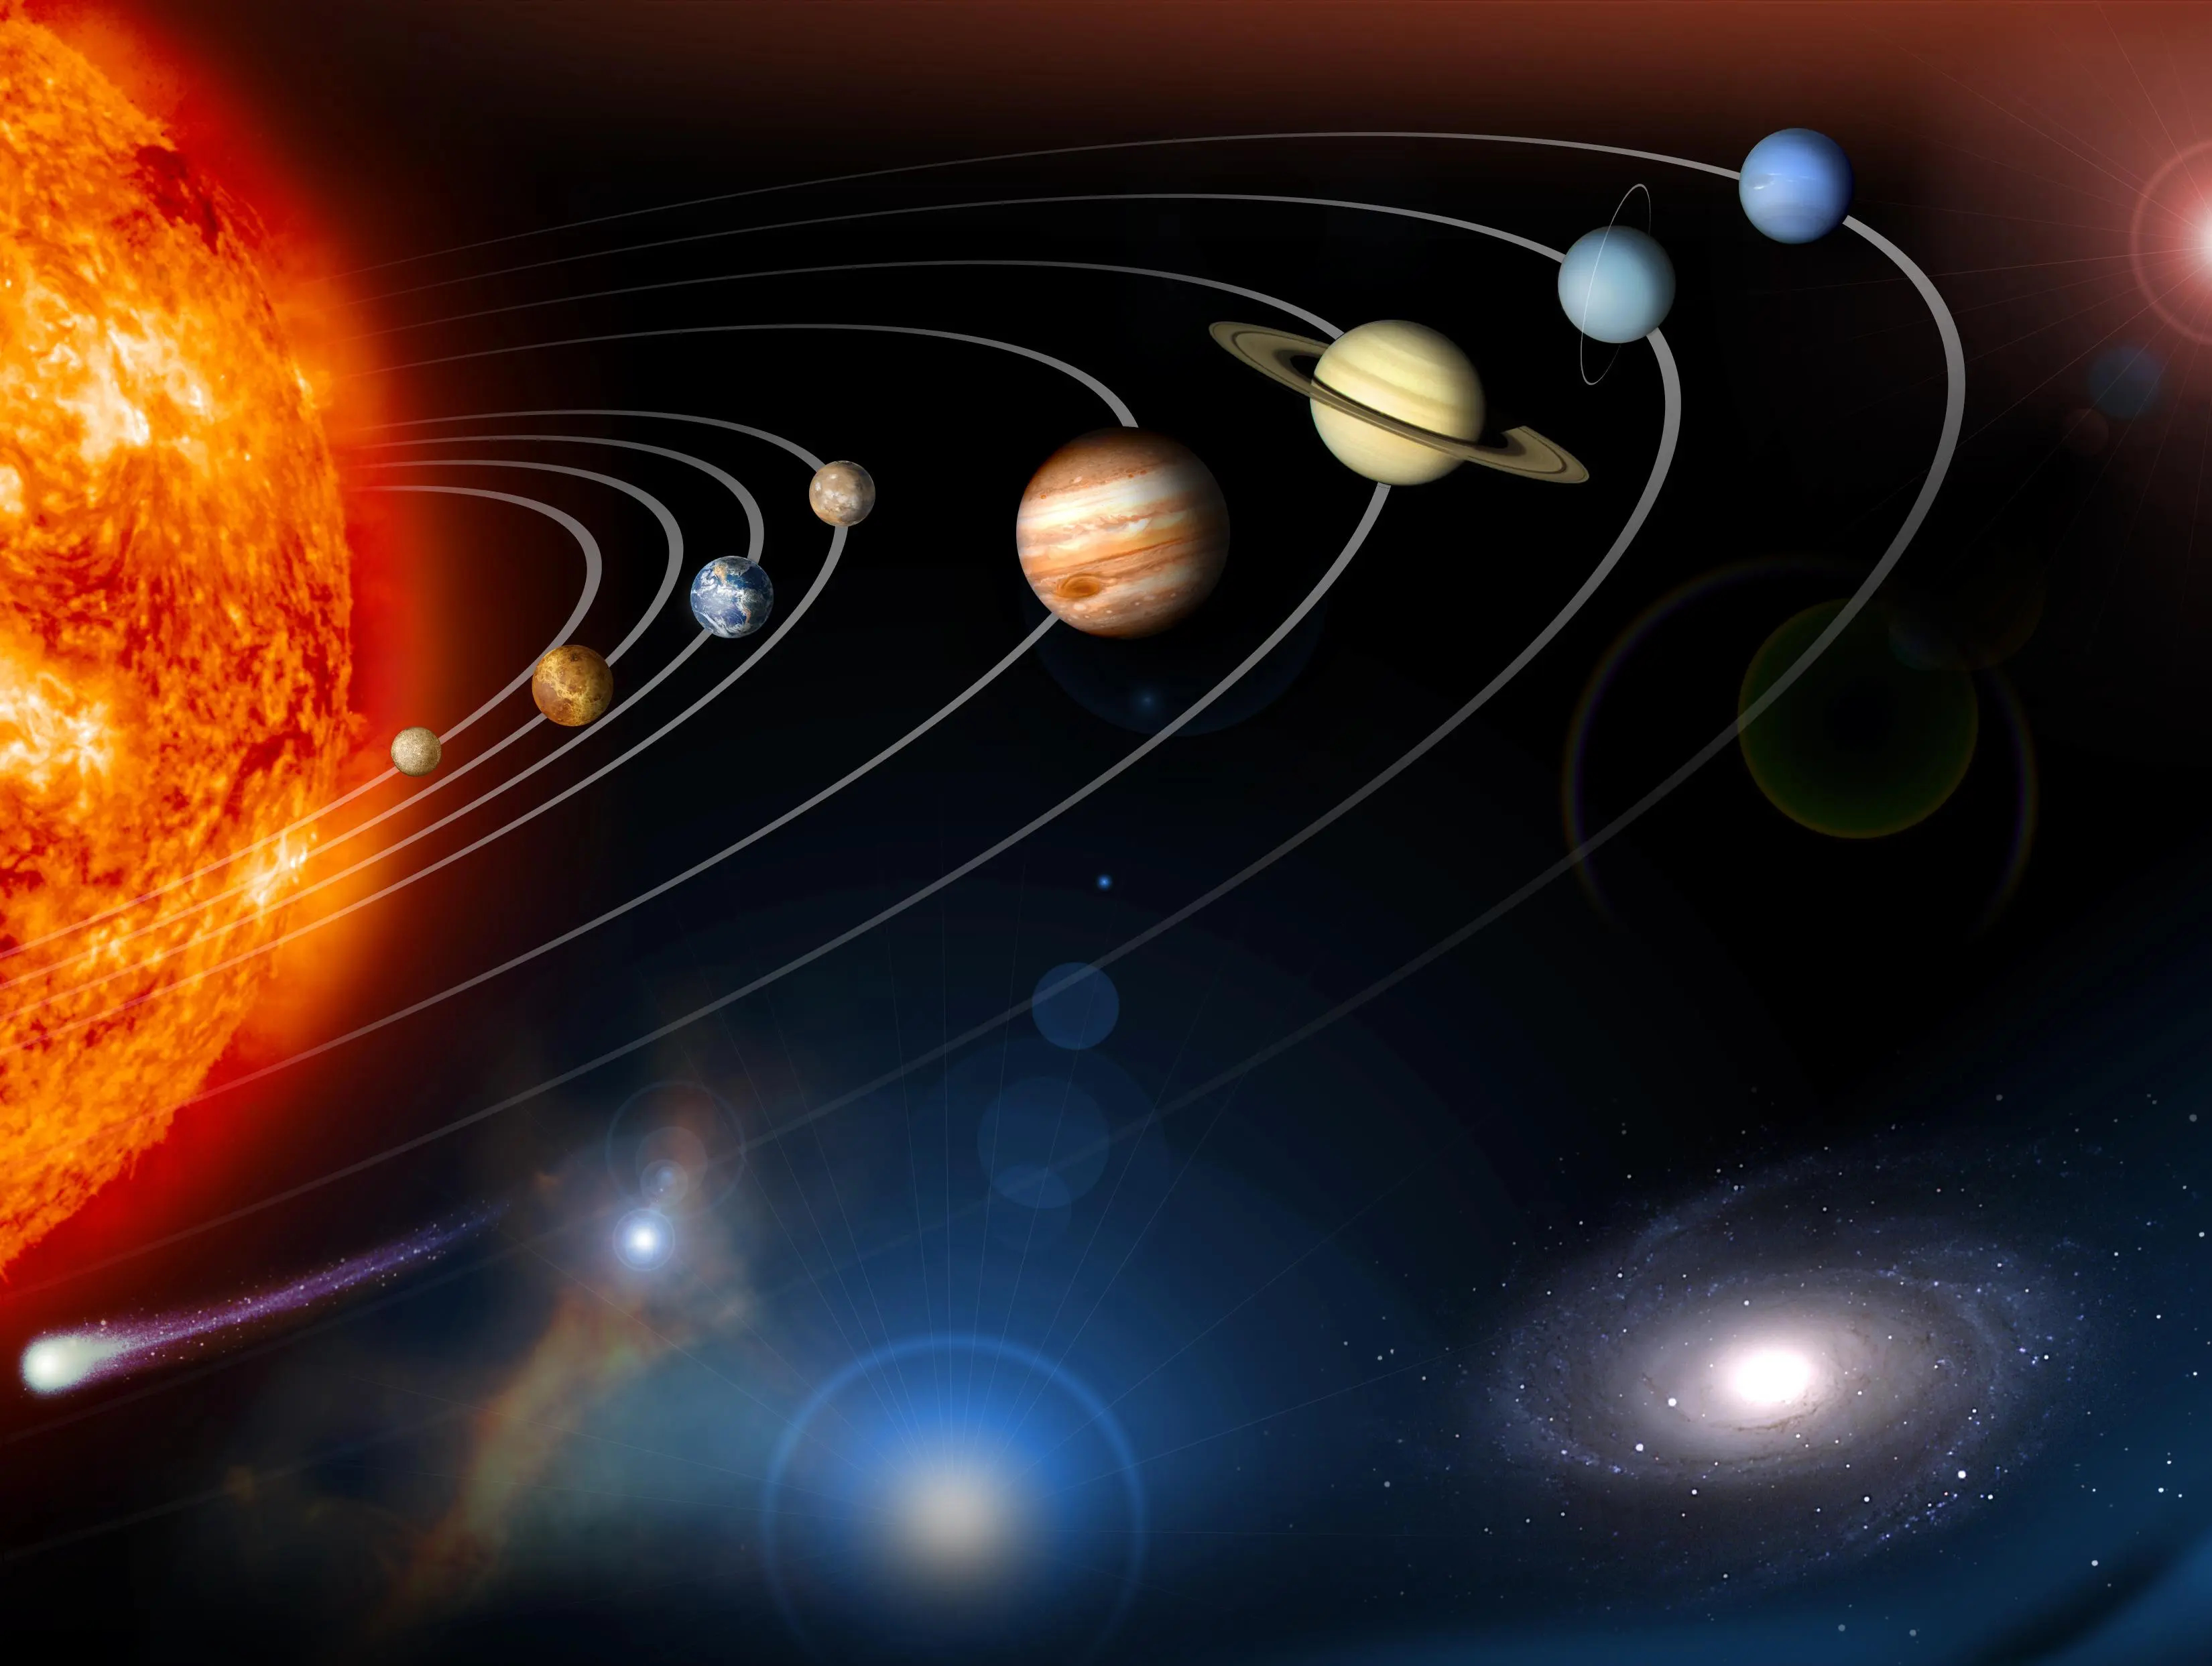 Vue d'artiste de notre Système solaire et de ses planètes (les distances et les tailles ne sont pas à l'échelle). © Nasa